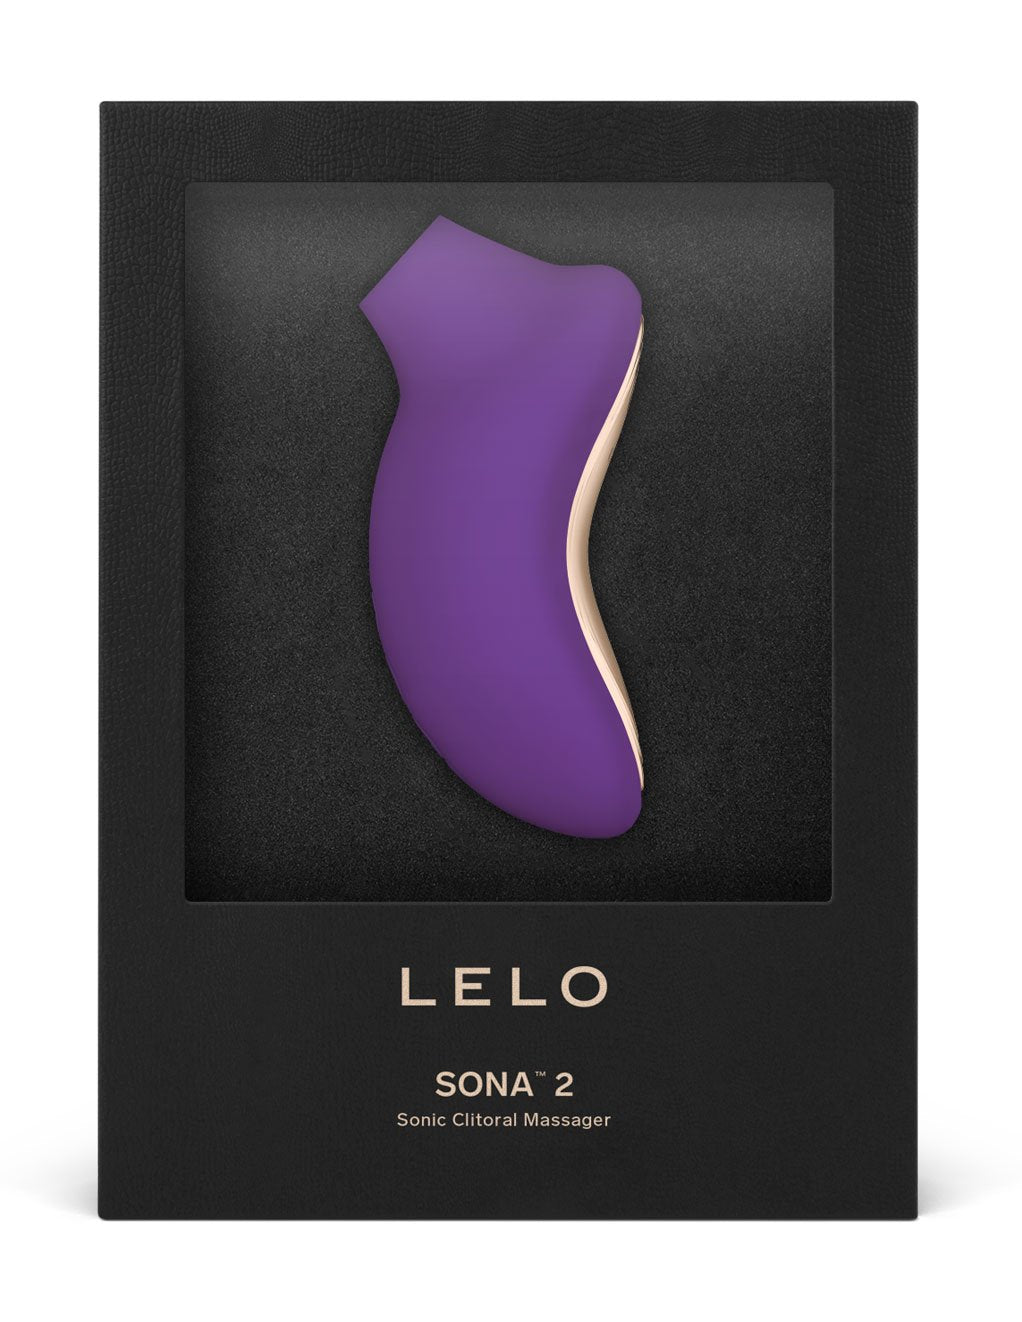 Lelo Sona 2 Sonic Clitoral Massager- Purple- Box